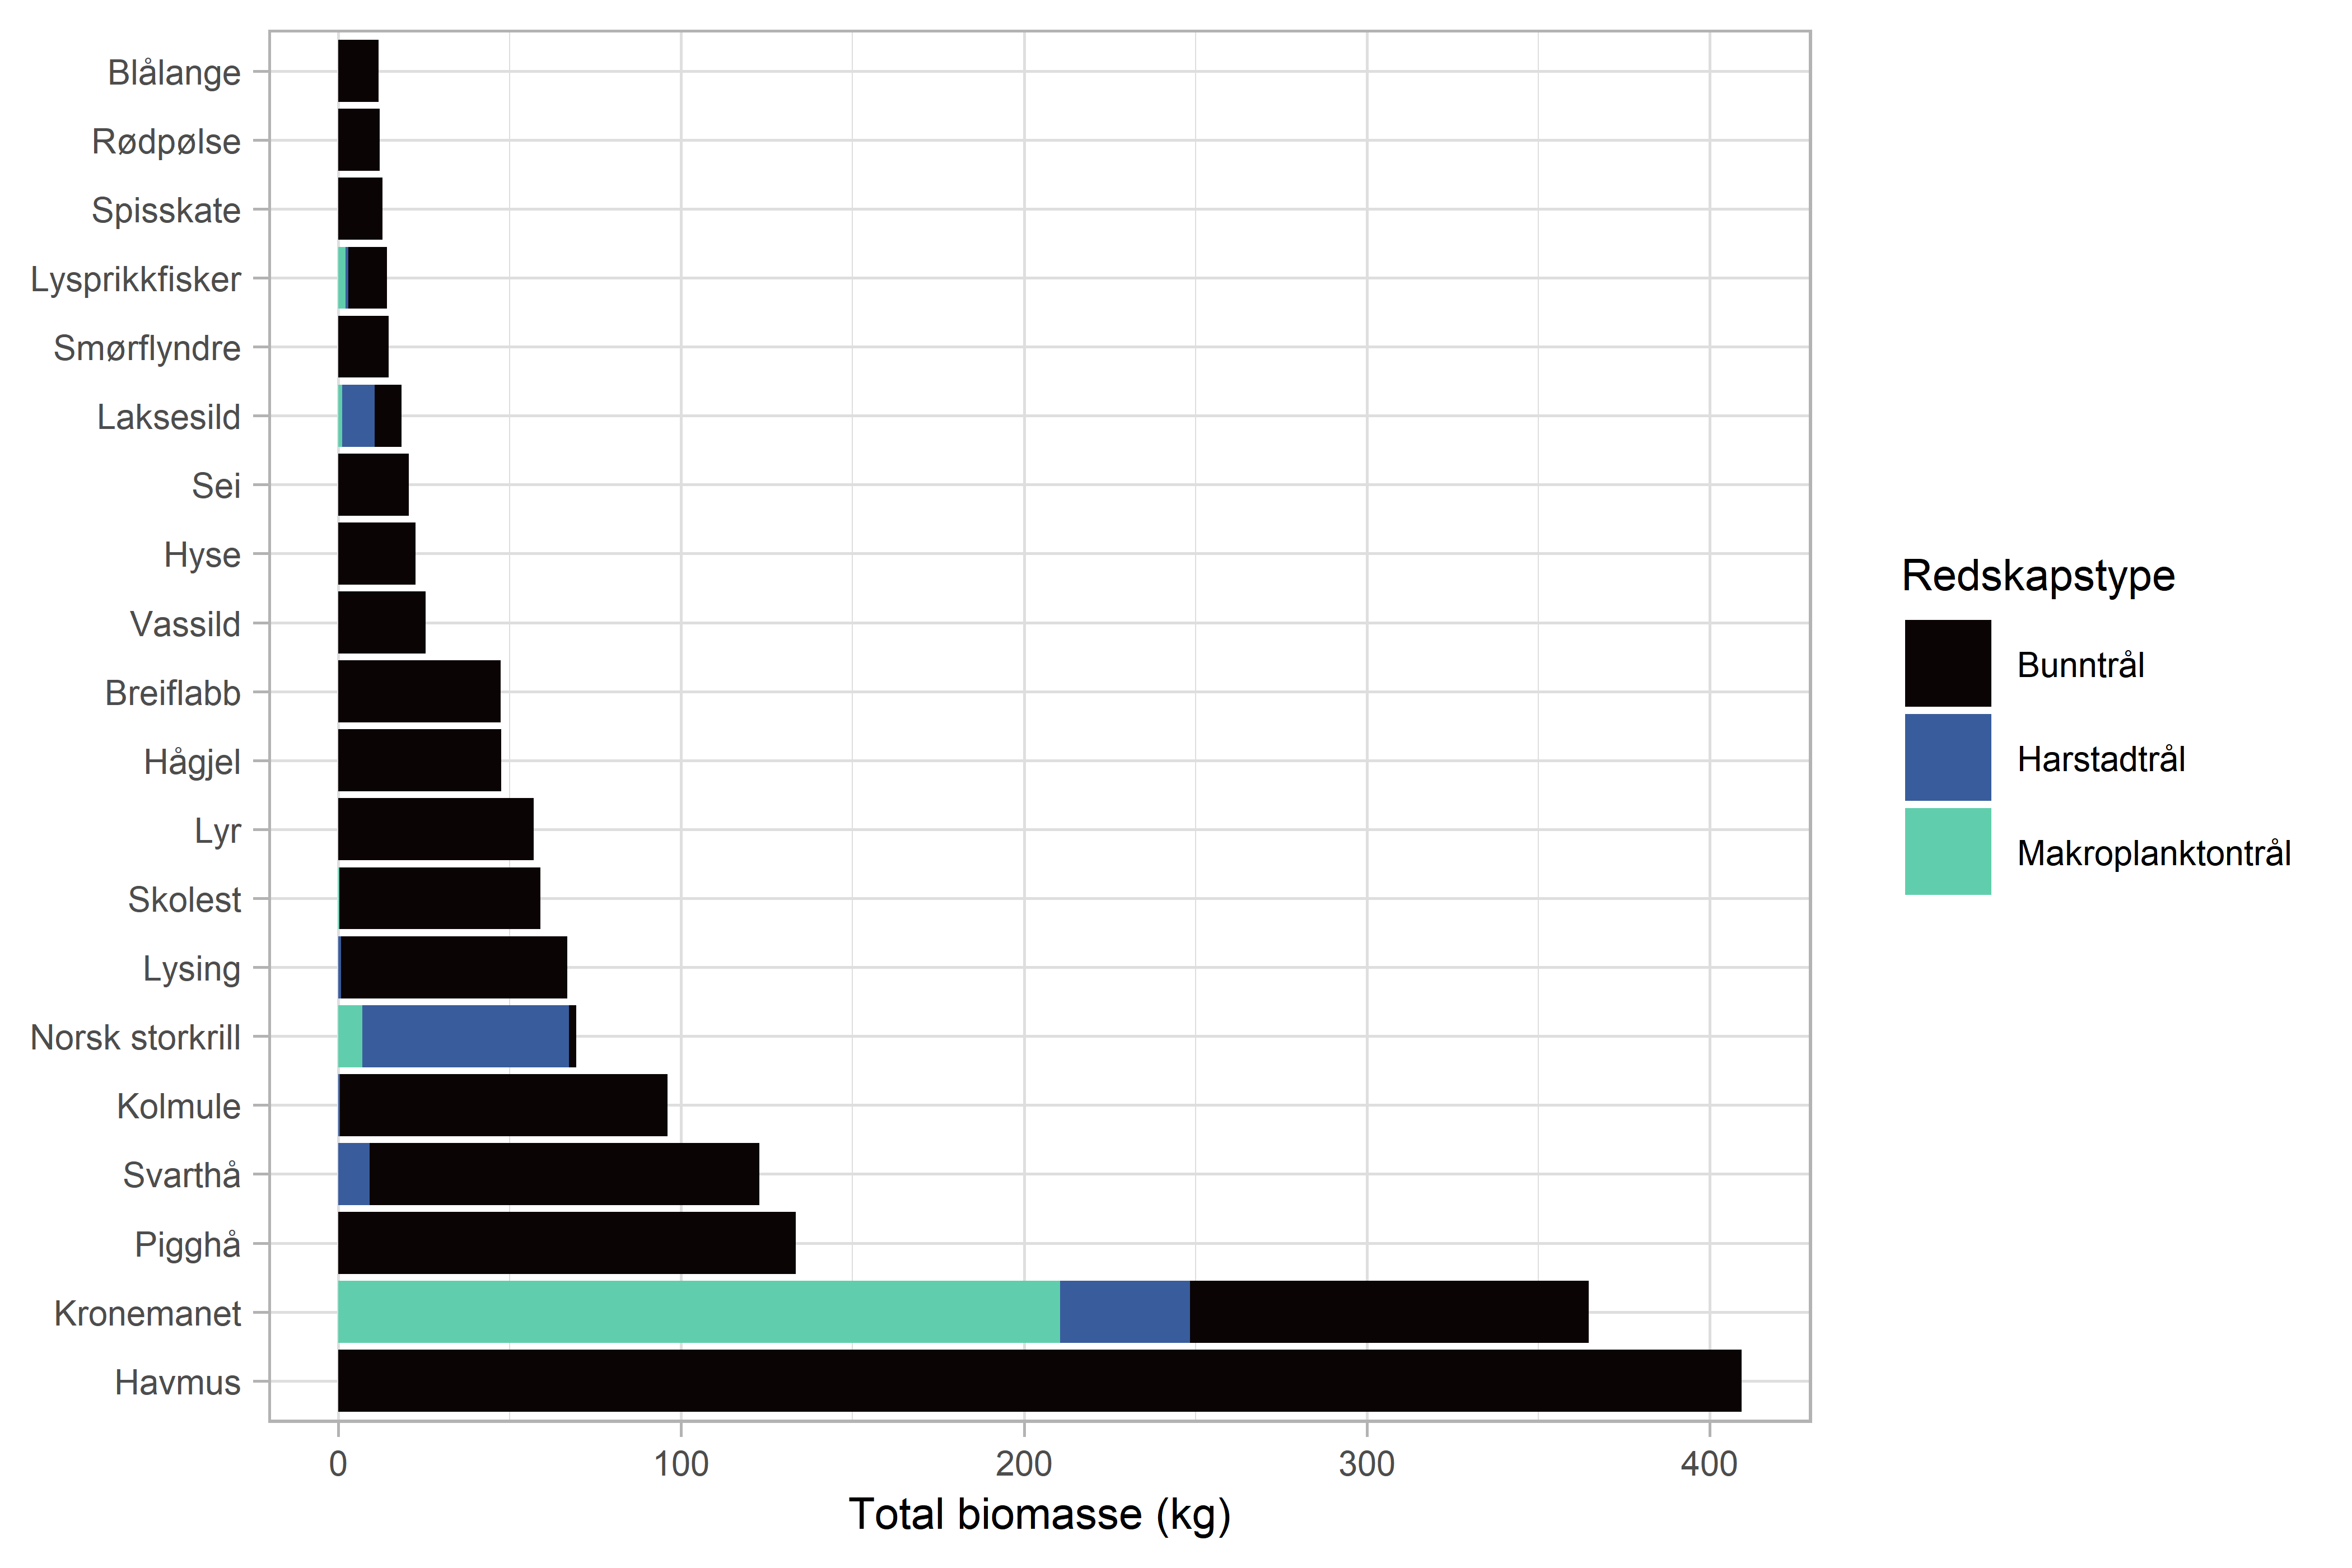 Figuren viser et horisontalt stolpediagram med de 20 artene med høyest forekomst basert på totalbiomasse (kg) på hele toktet, per redskapstype. De horisontale stolpene viser totalfangst (kg) per art og er satt sammen av fangstene fra bunntrål (svart), harstadtrål (blå) og makroplanktontrål (grønn). X-aksen viser total biomasse (0-430 kg) og y-aksen lister de 20 artene (fra øverst): blålange, rødpølse, spisskate, lysprikkfisker, smørflyndre, laksesild, sei, hyse, vassild, breiflabb, hågjel, lyr, skolest, lysing, norsk storkrill, kolmule, svarthå, pigghå, kronemanet og havmus. Arten med laveste totalfangst er blålange (ca. 15 kilo) og arten med høyeste totalfangst er havmus (ca. 410 kg). 